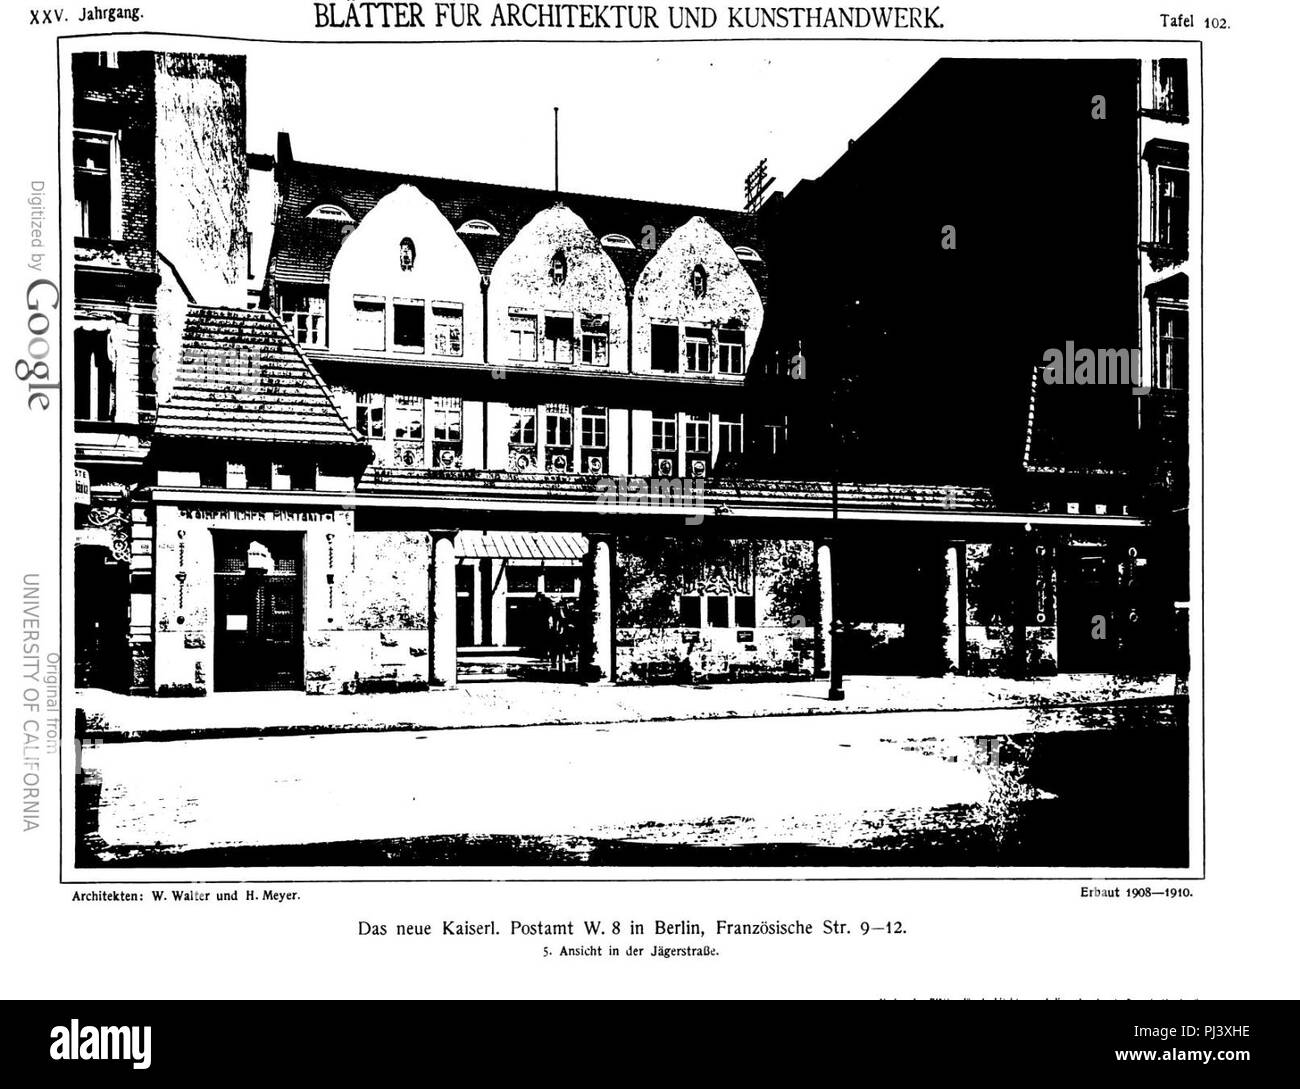 B kaiserl postamt französ str. 9-12 und jägerstr. 67-68 (blätter arch kunsthandw 25 (1912), Tf 102. Stock Photo